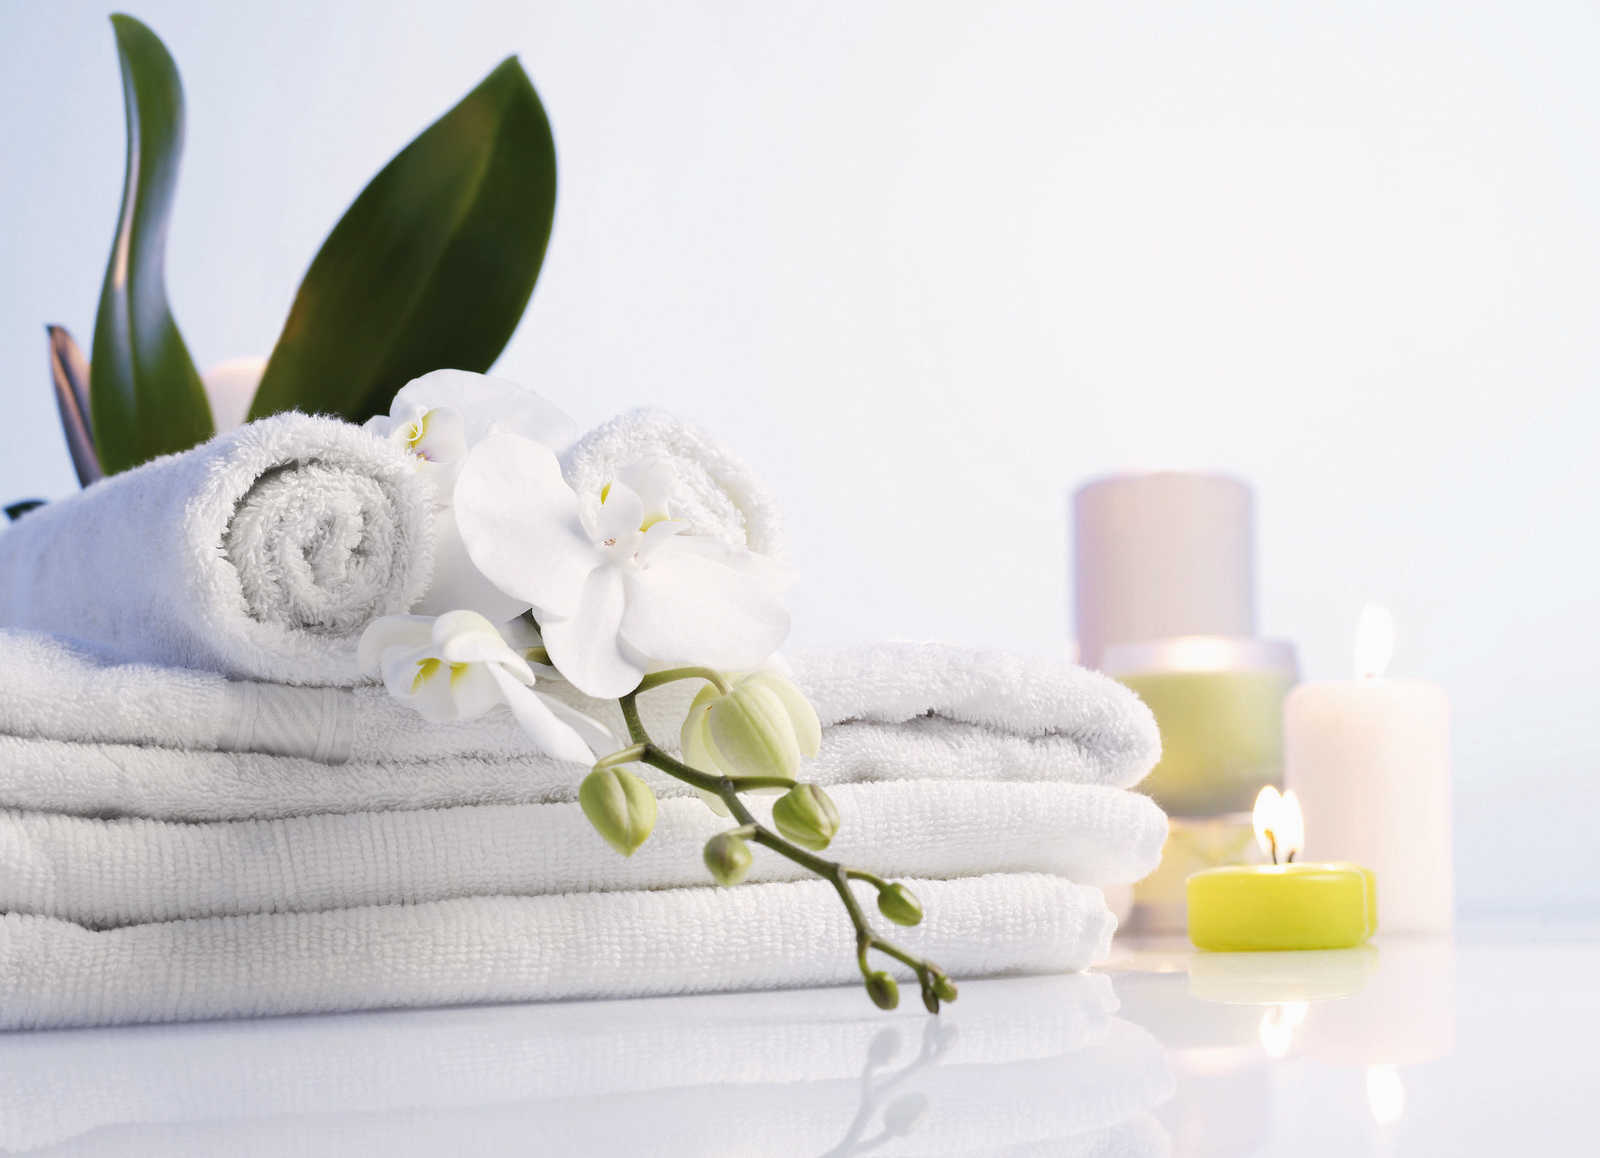             Fresh Linen Duftkerze mit angenehmen Duft nach frisch gewaschener Wäsche – 380g
        